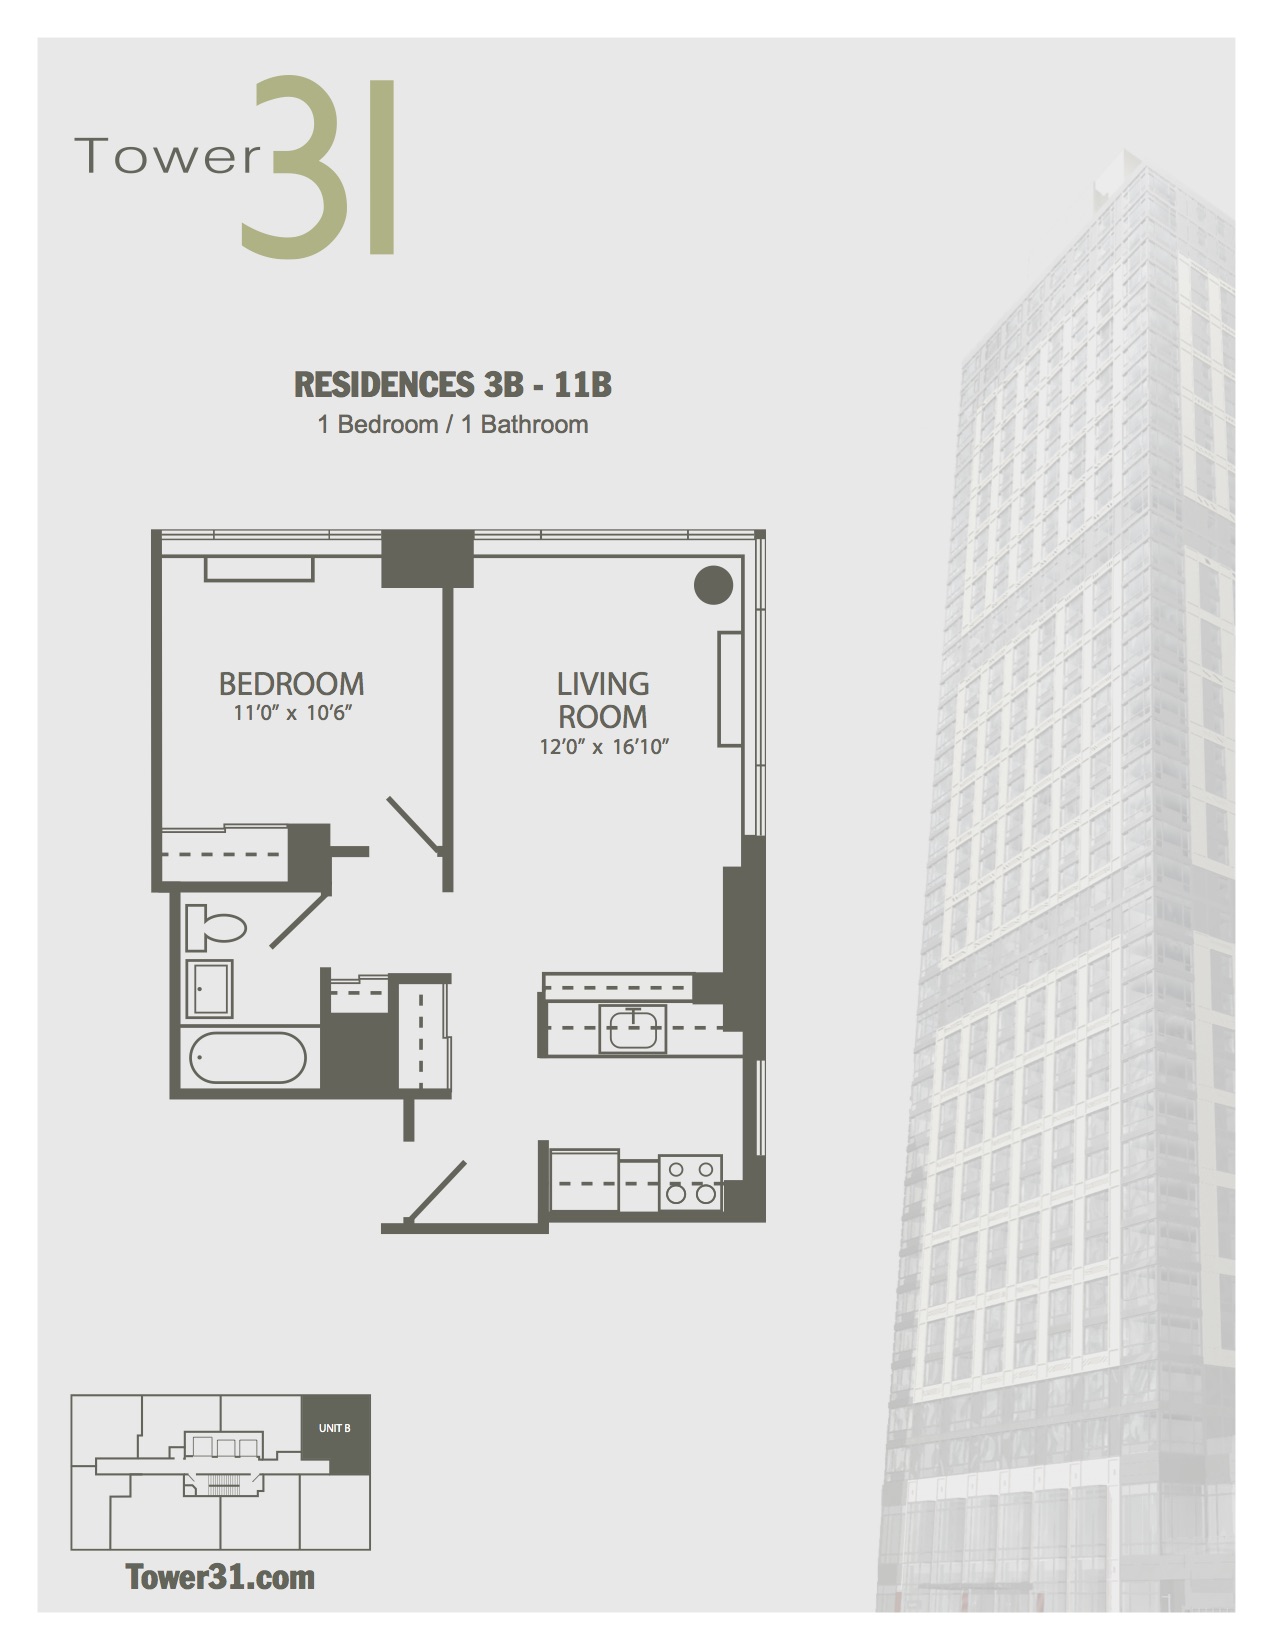 Residence B Floors 3-11